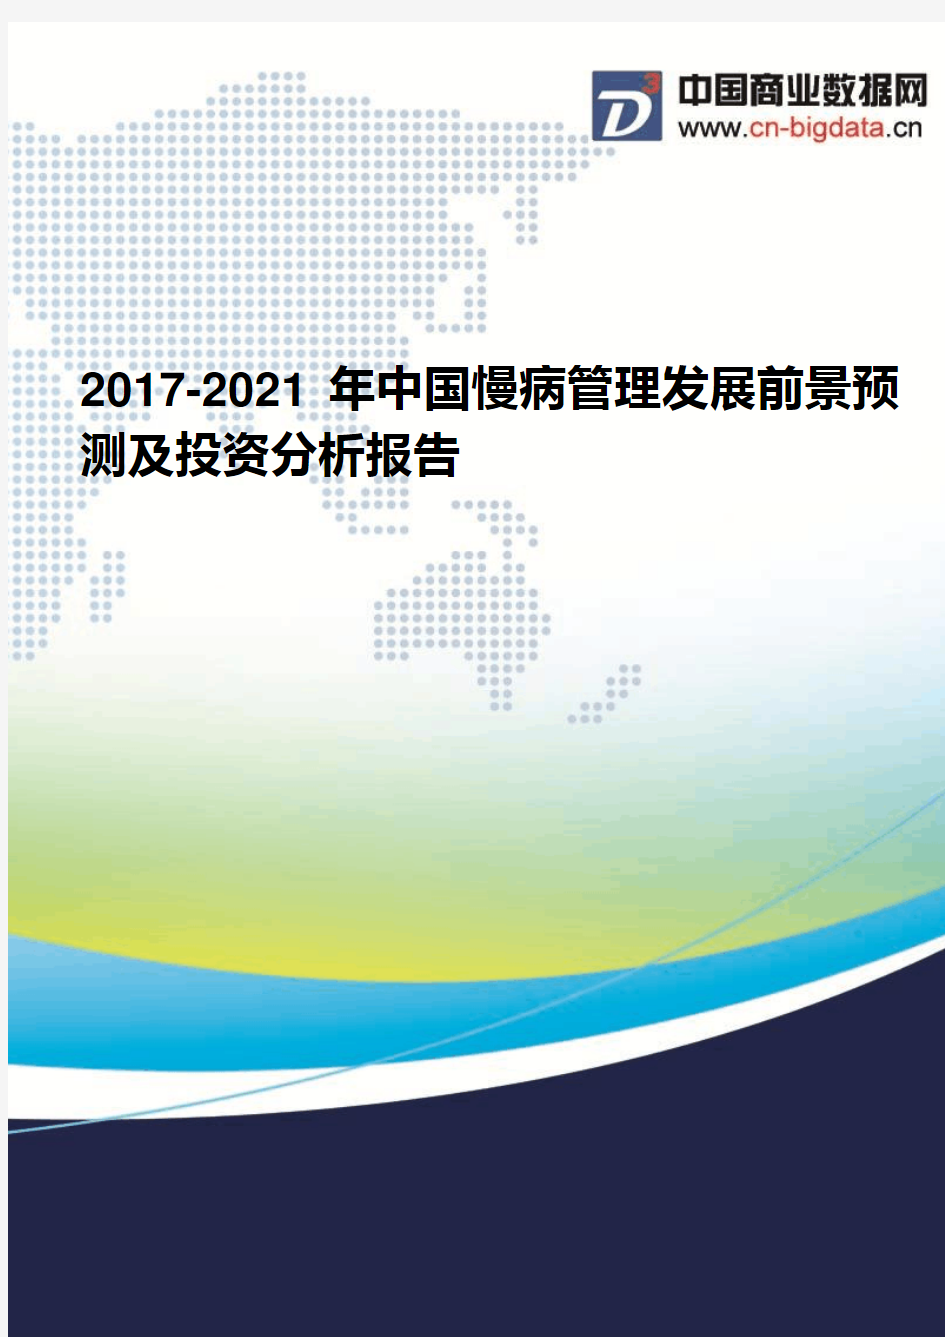 2017-2021年中国慢病管理发展前景预测及投资分析报告(2017版目录)